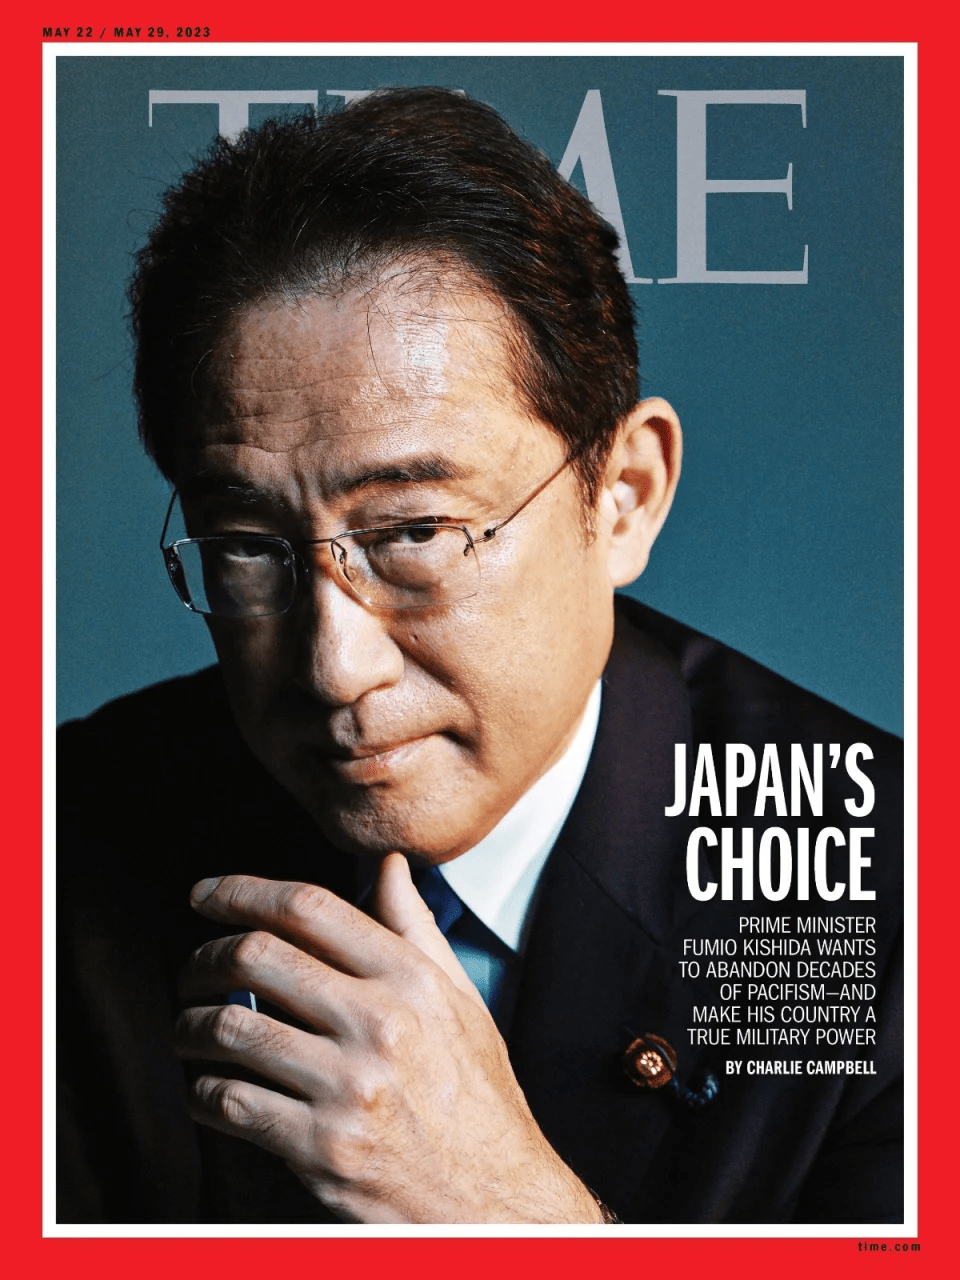 岸田將登上時代雜誌5月號22至29日封面。twitter@time